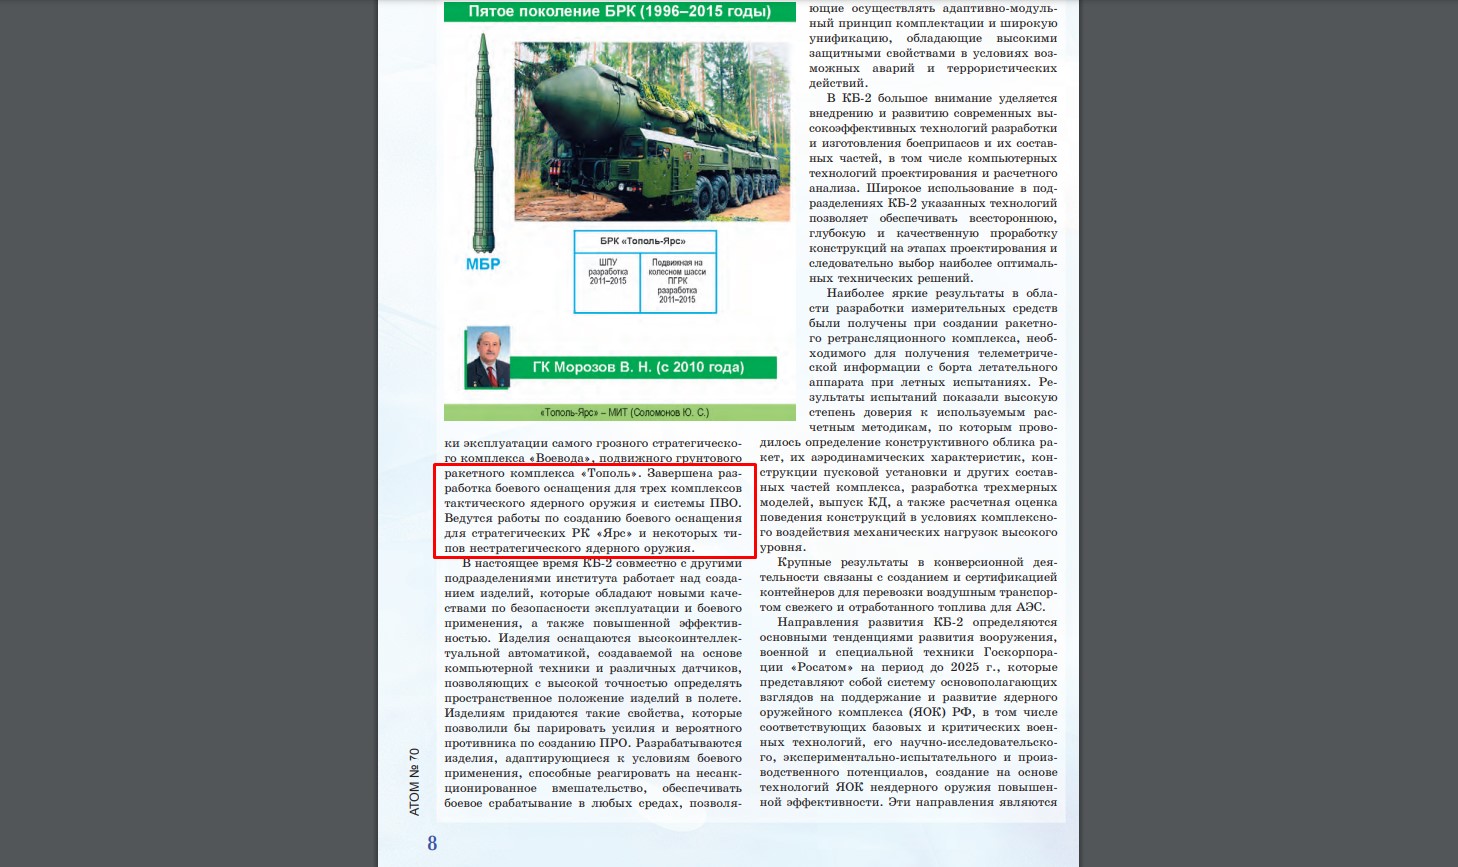 Сторінка з російського журналу “Атом” №70 про створення ядерних боєприпасів для системи ППО